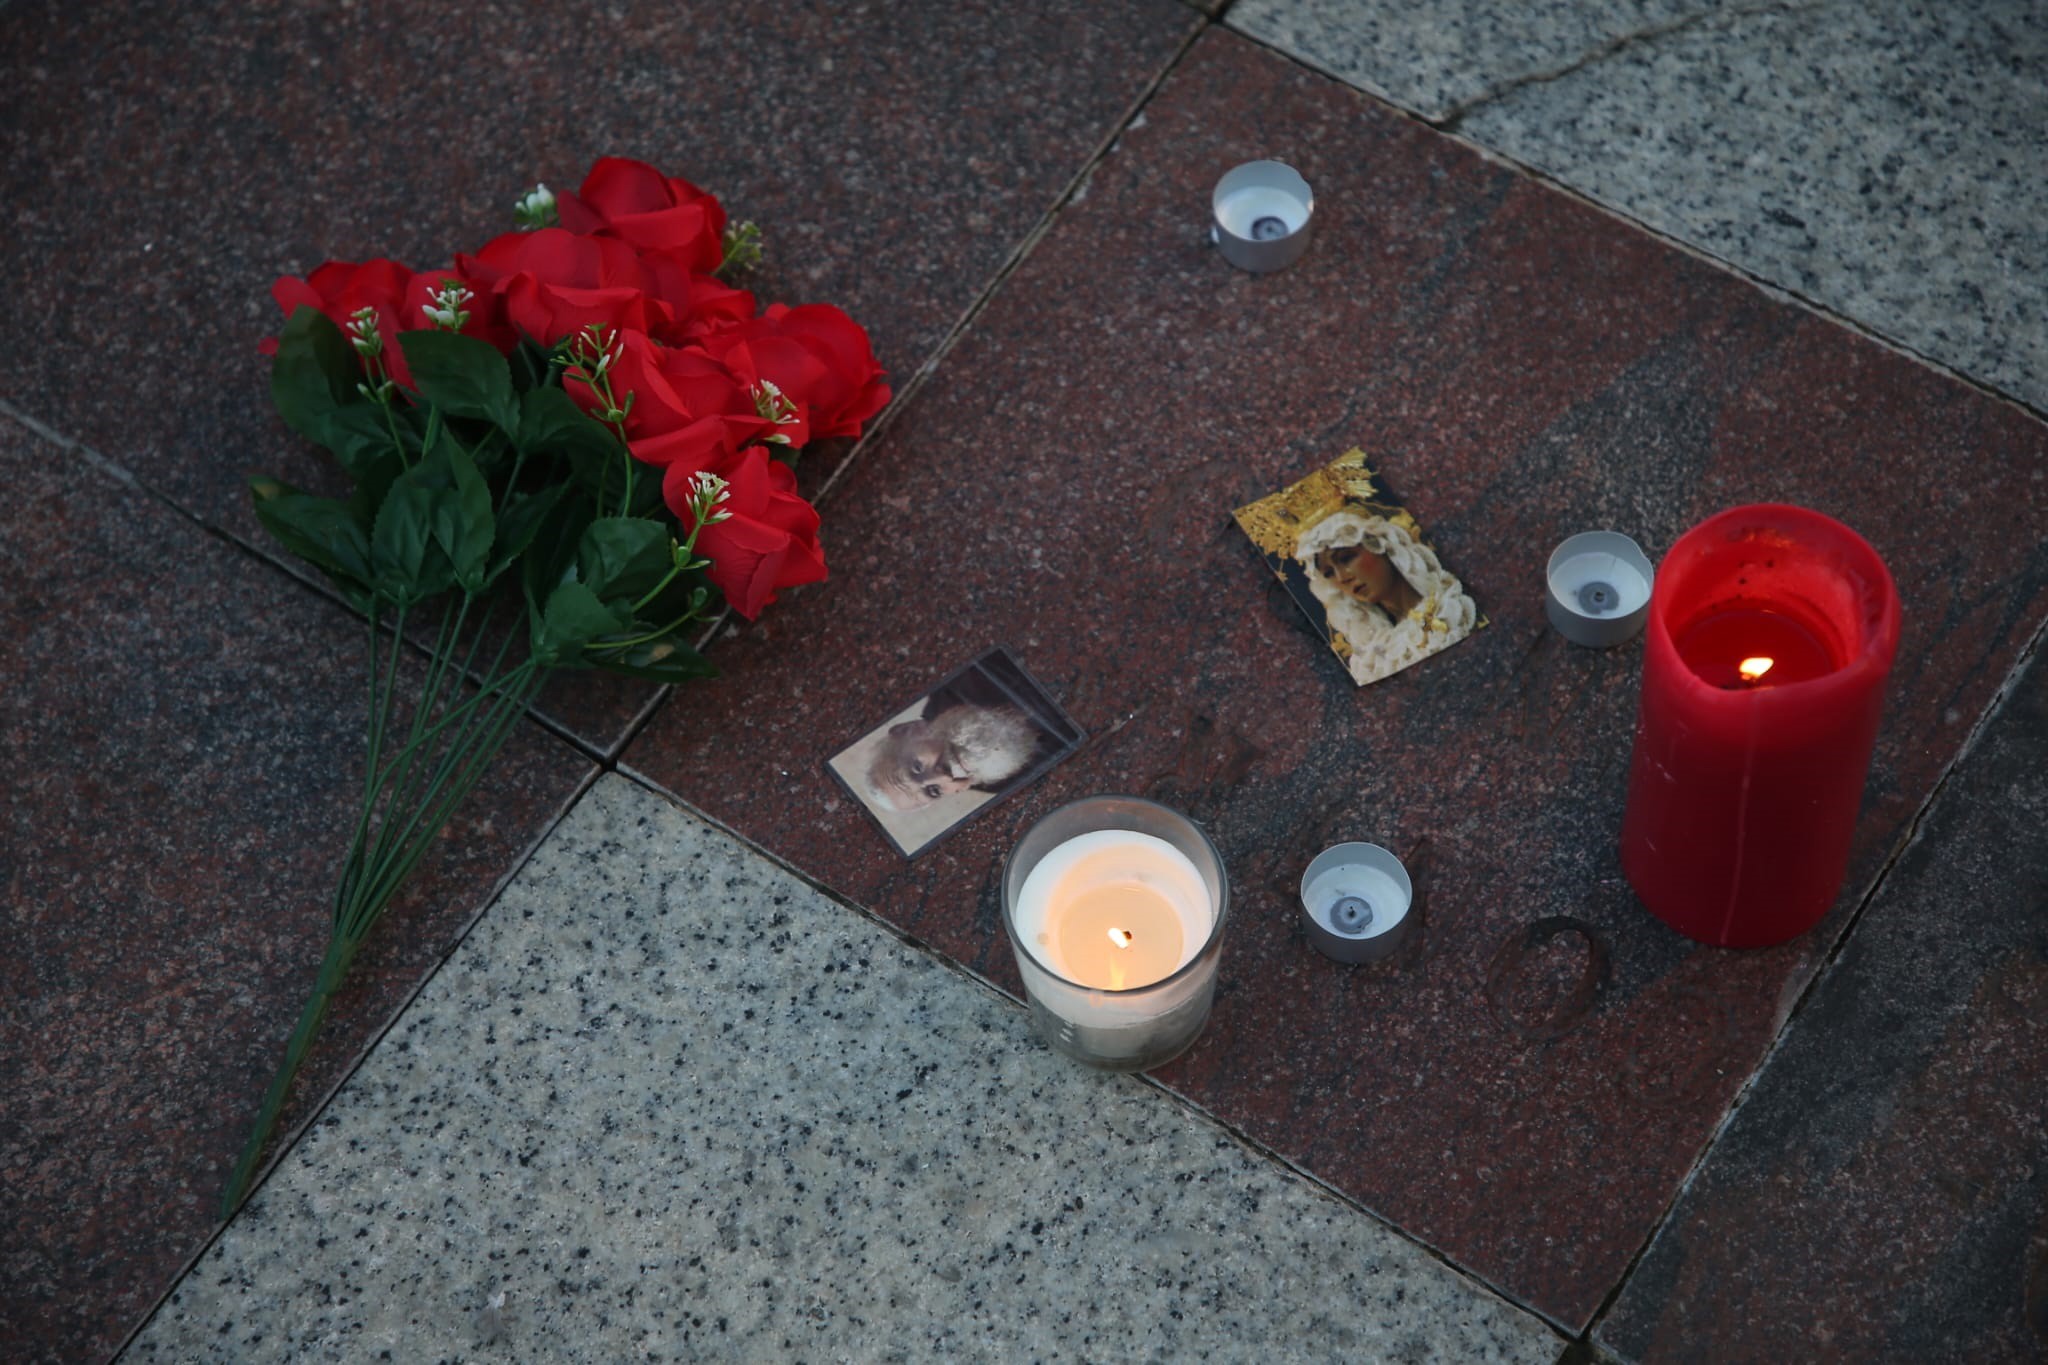 Muestras de dolor en la Plaza Alta, de Algeciras, donde caía el cuerpo sin vida de un sacristán tras el ataque en su iglesia